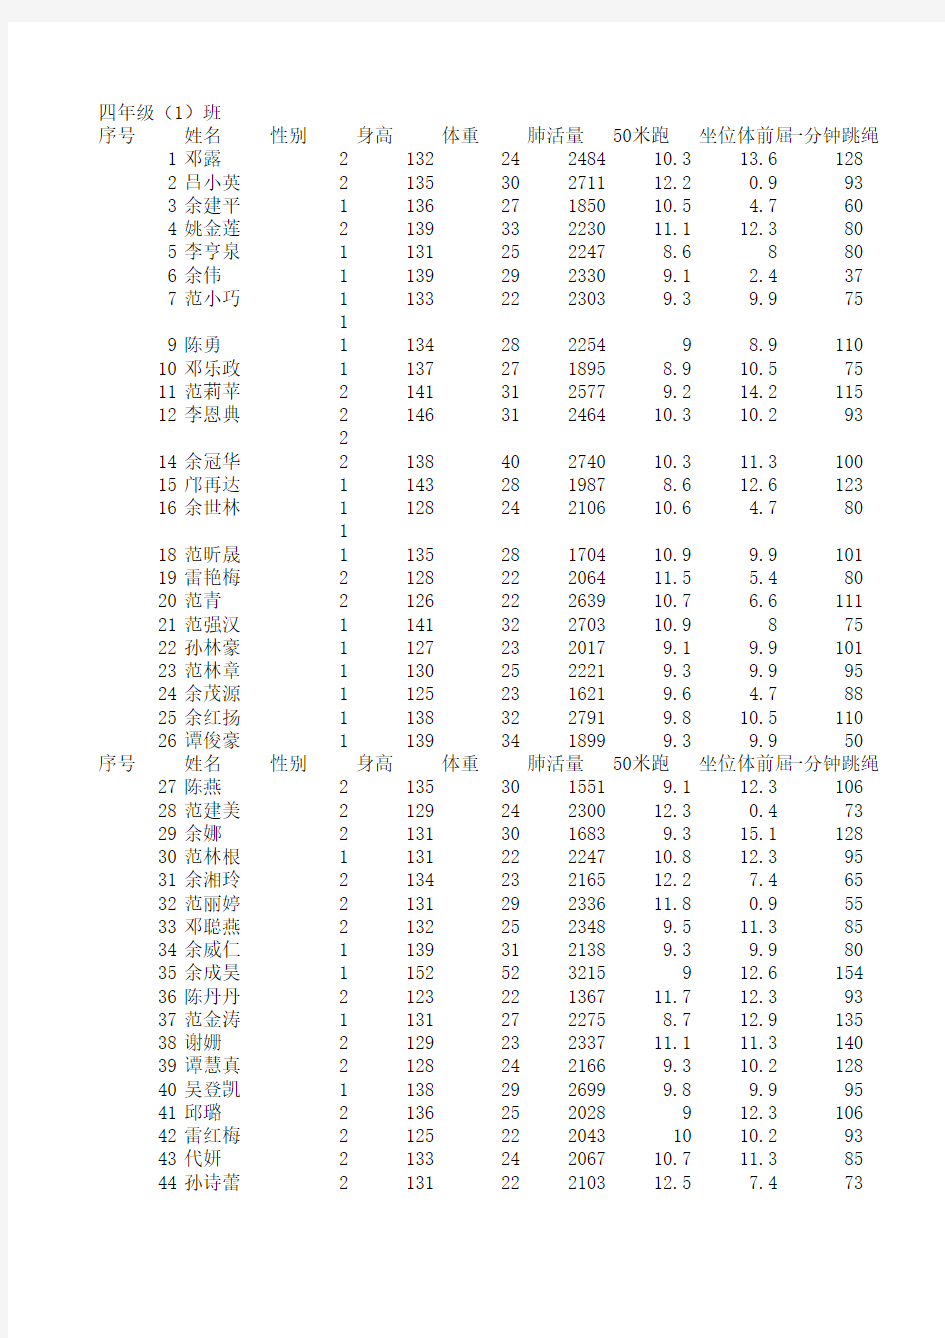 2014下国家体育测试记录表(4.1班)